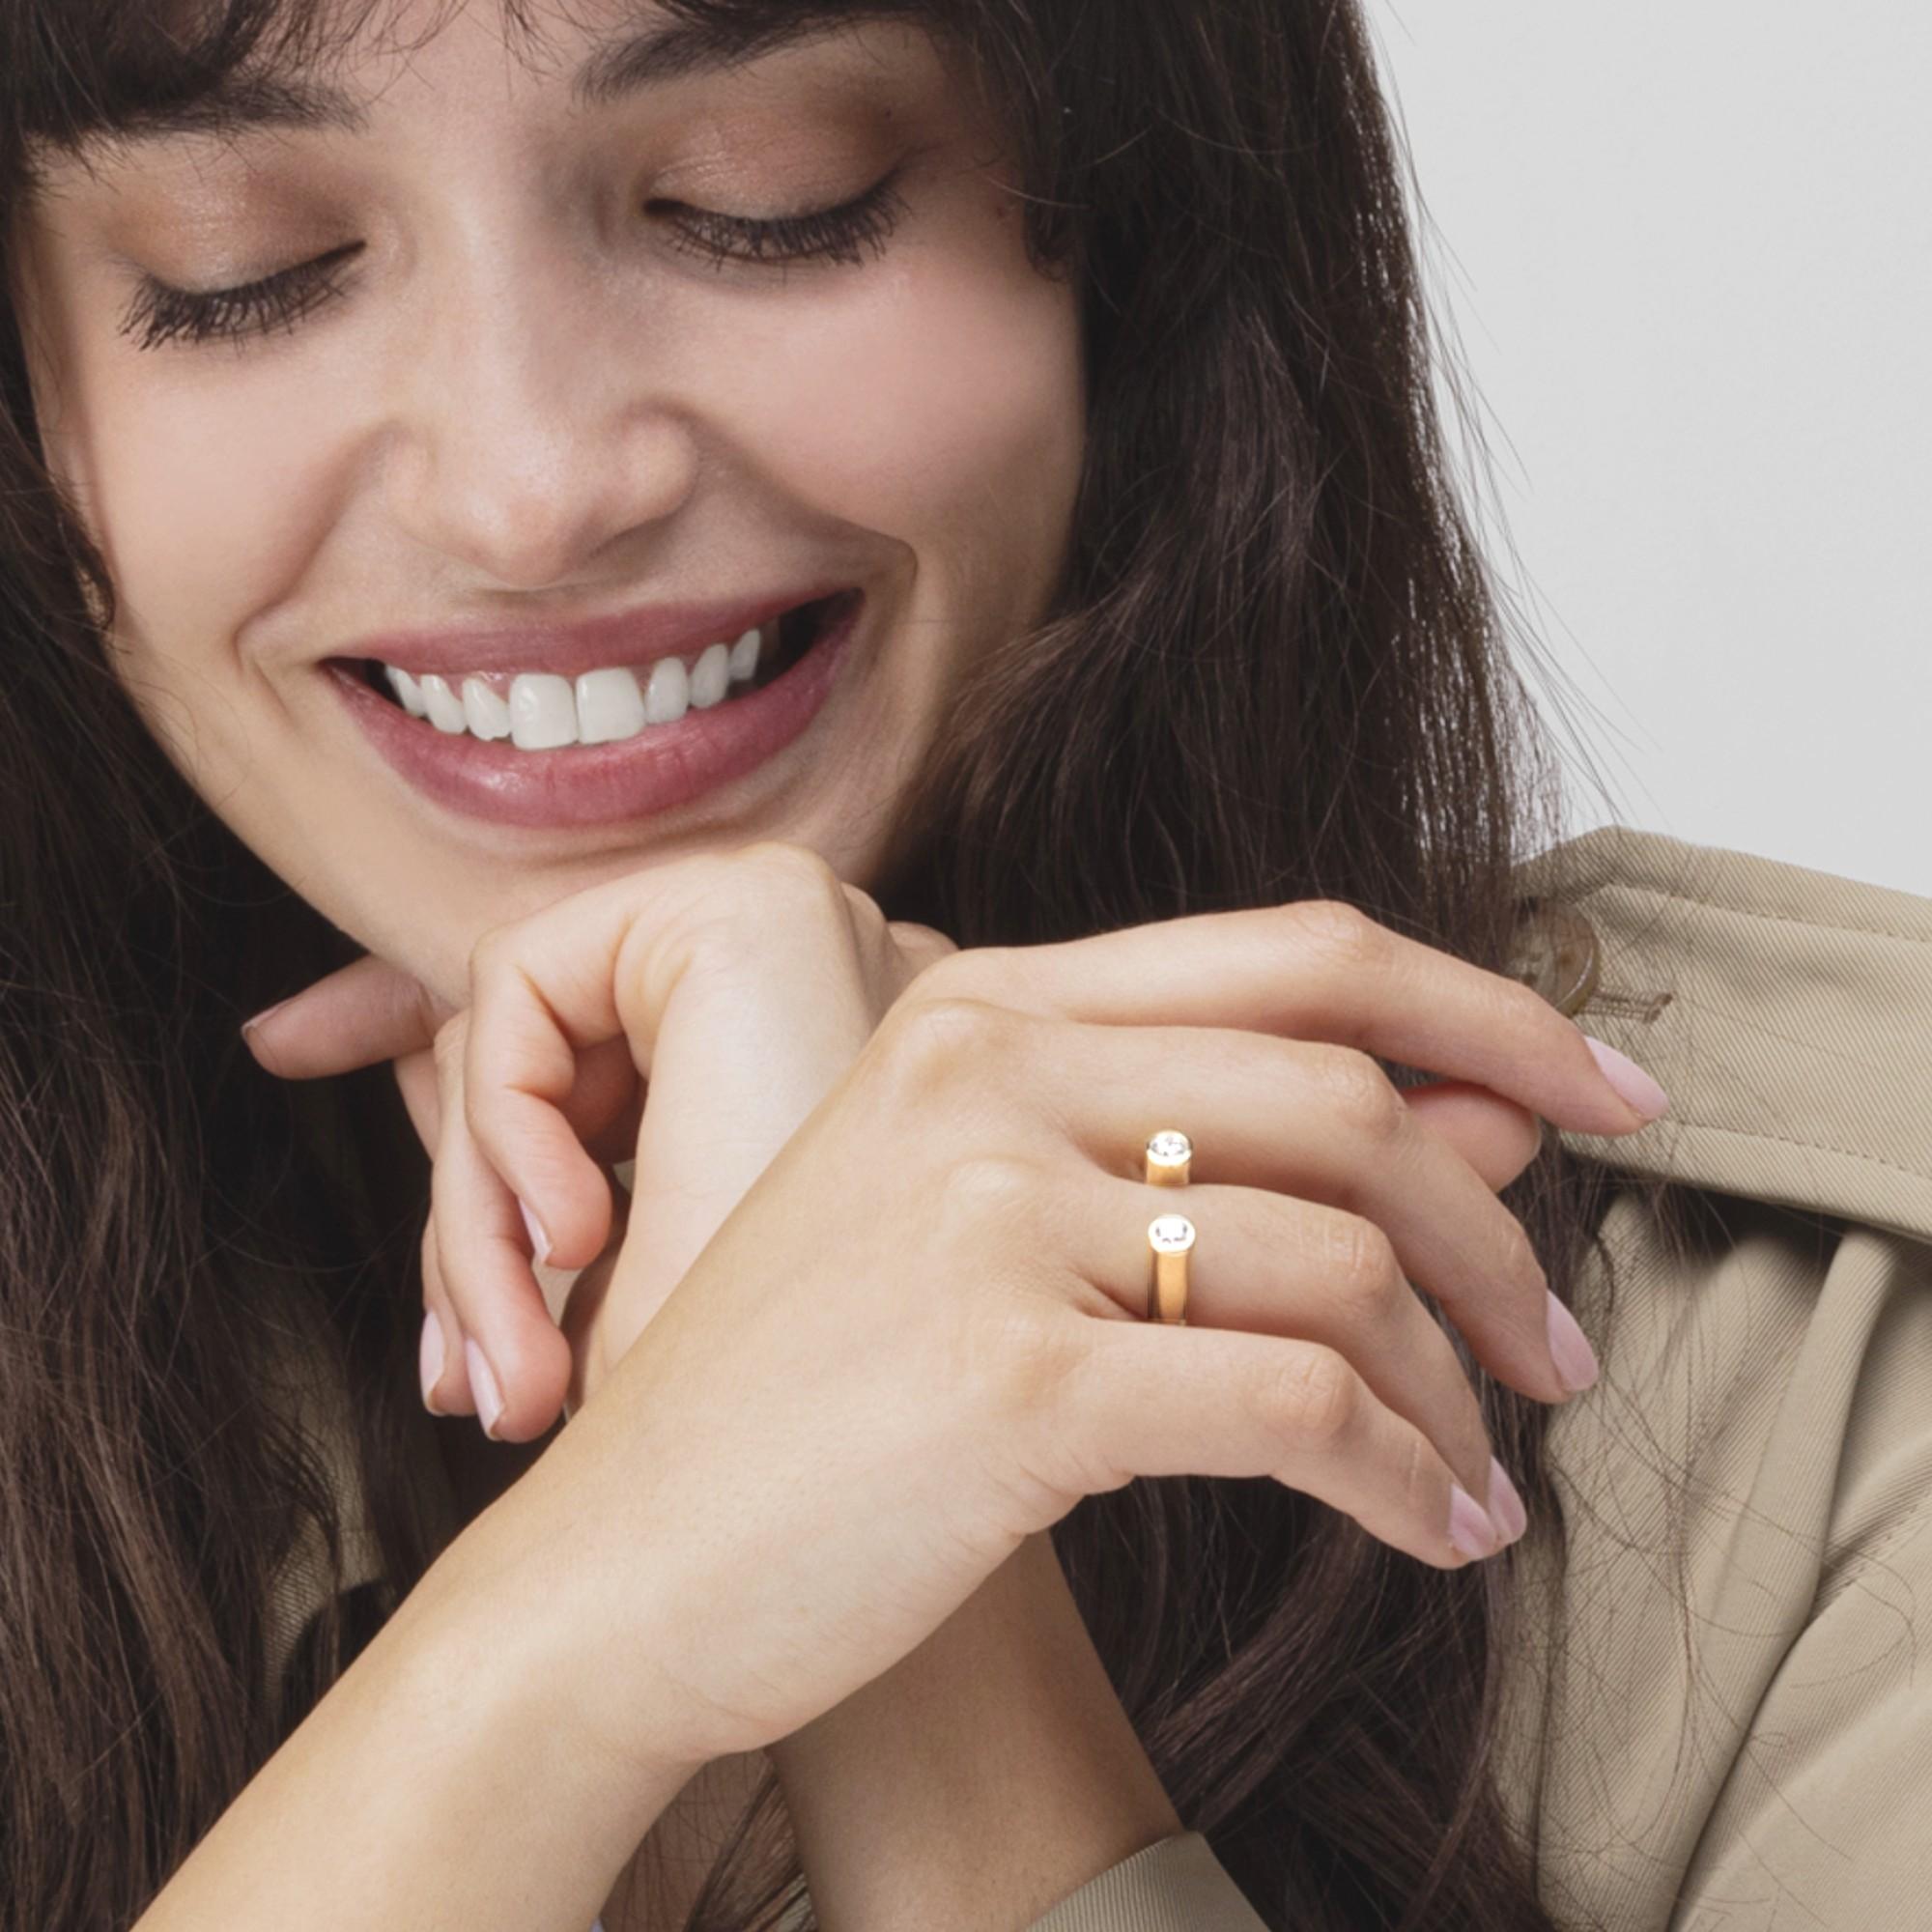 Alex Jona Design Collection, handgefertigt in Italien, offener Ring aus 18 Karat Gelbgold, besetzt mit zwei weißen Diamanten im Rundschliff mit einem Gesamtgewicht von 0,80 Karat, Farbe D, Reinheit SI2. 

Die Juwelen von Alex Jona zeichnen sich